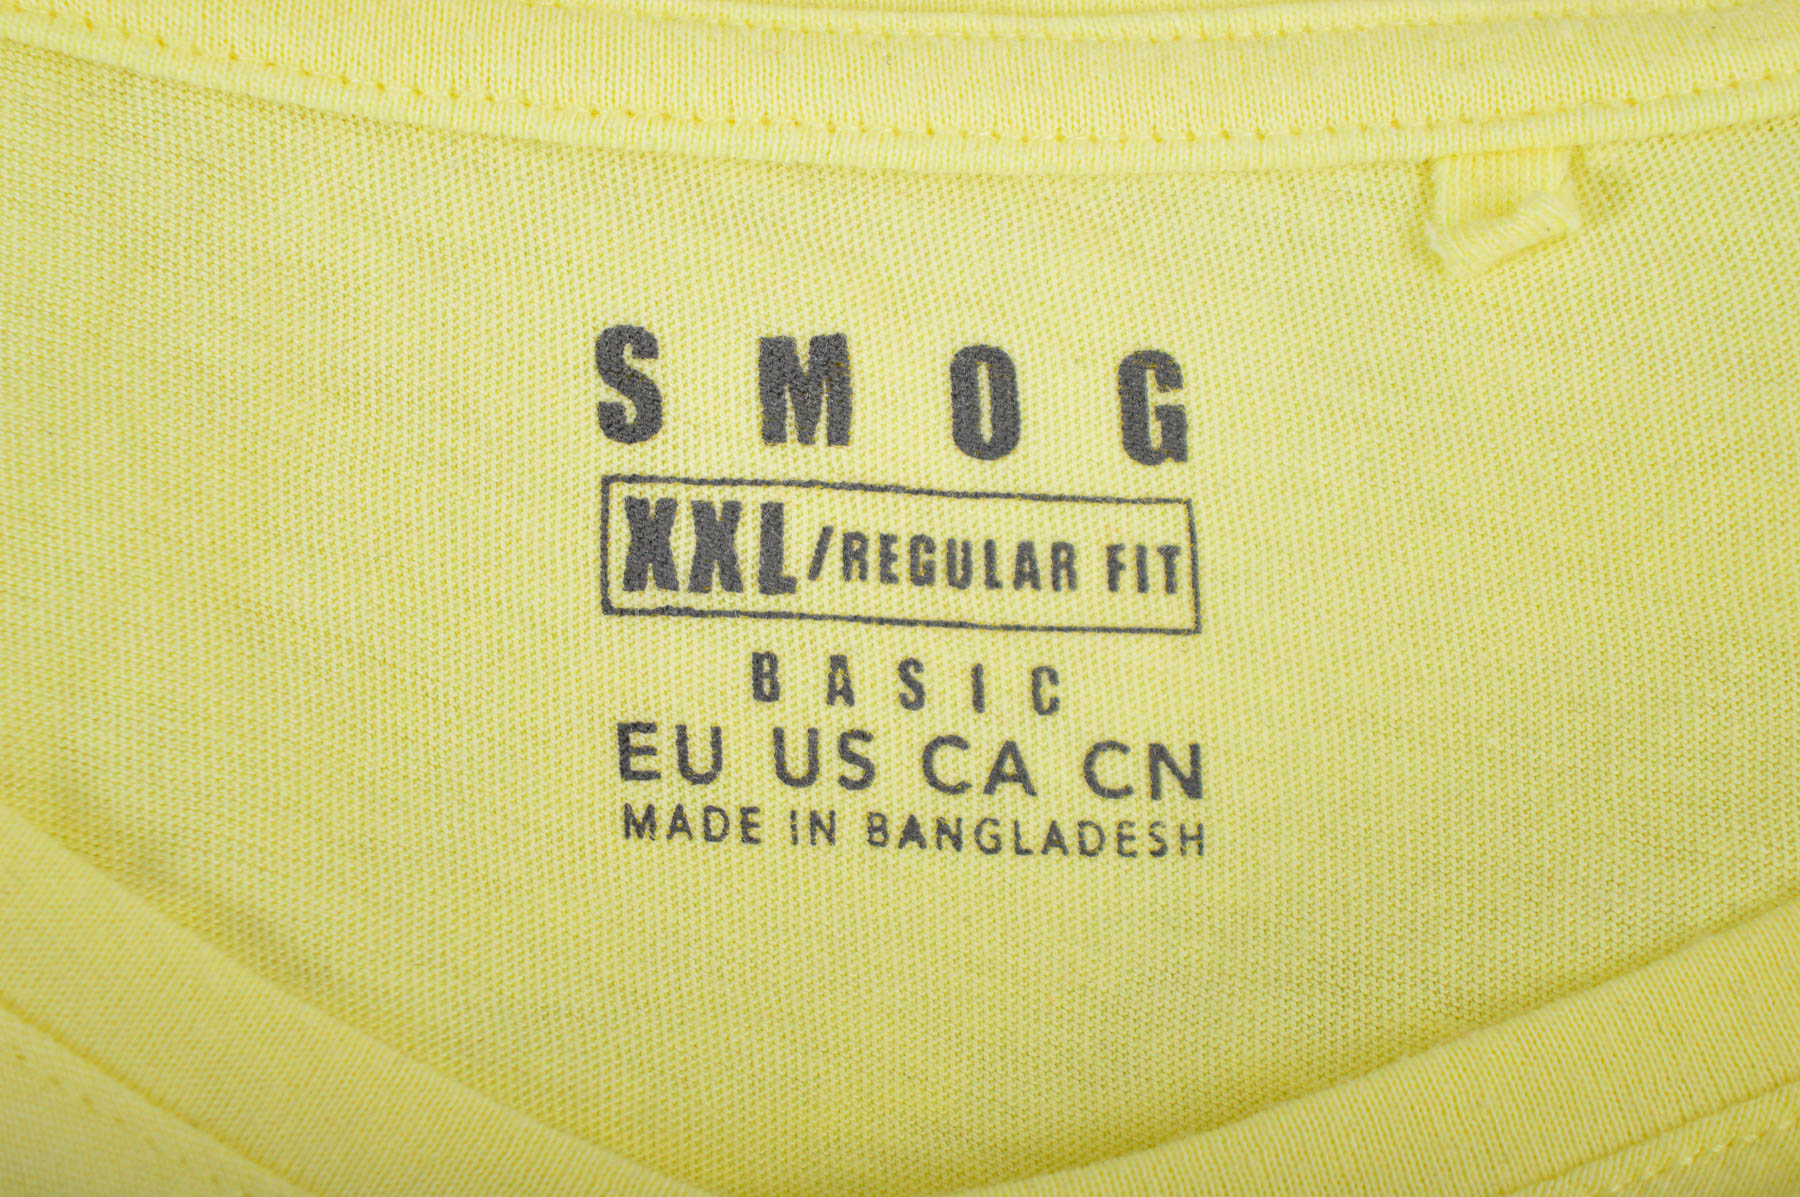 Αντρική μπλούζα - SMOG - 2